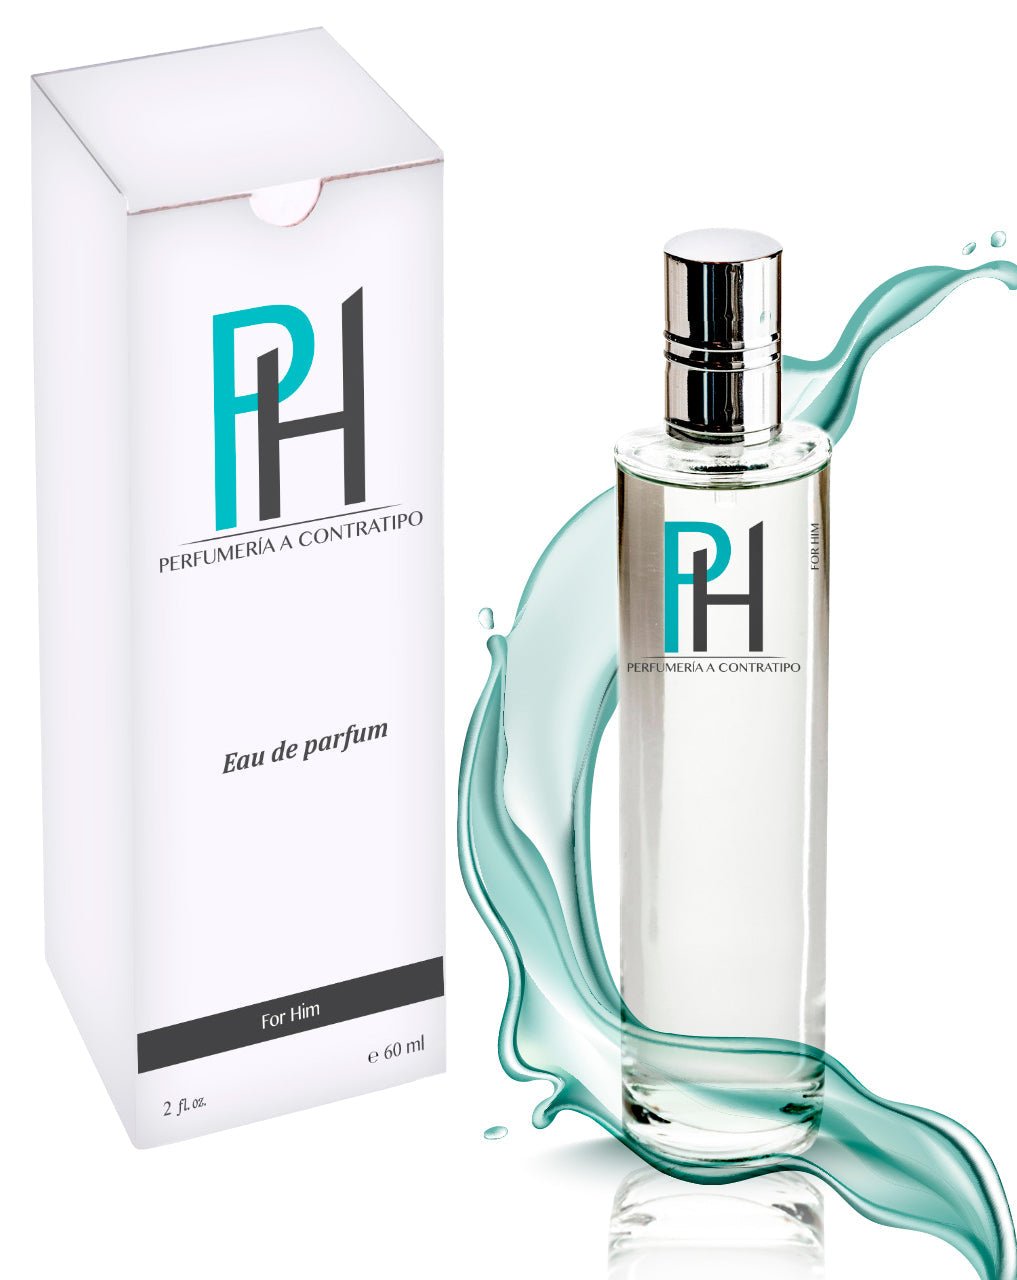 Perfume Absolut Instict de 60 ml - PH Perfumería a Contratipo